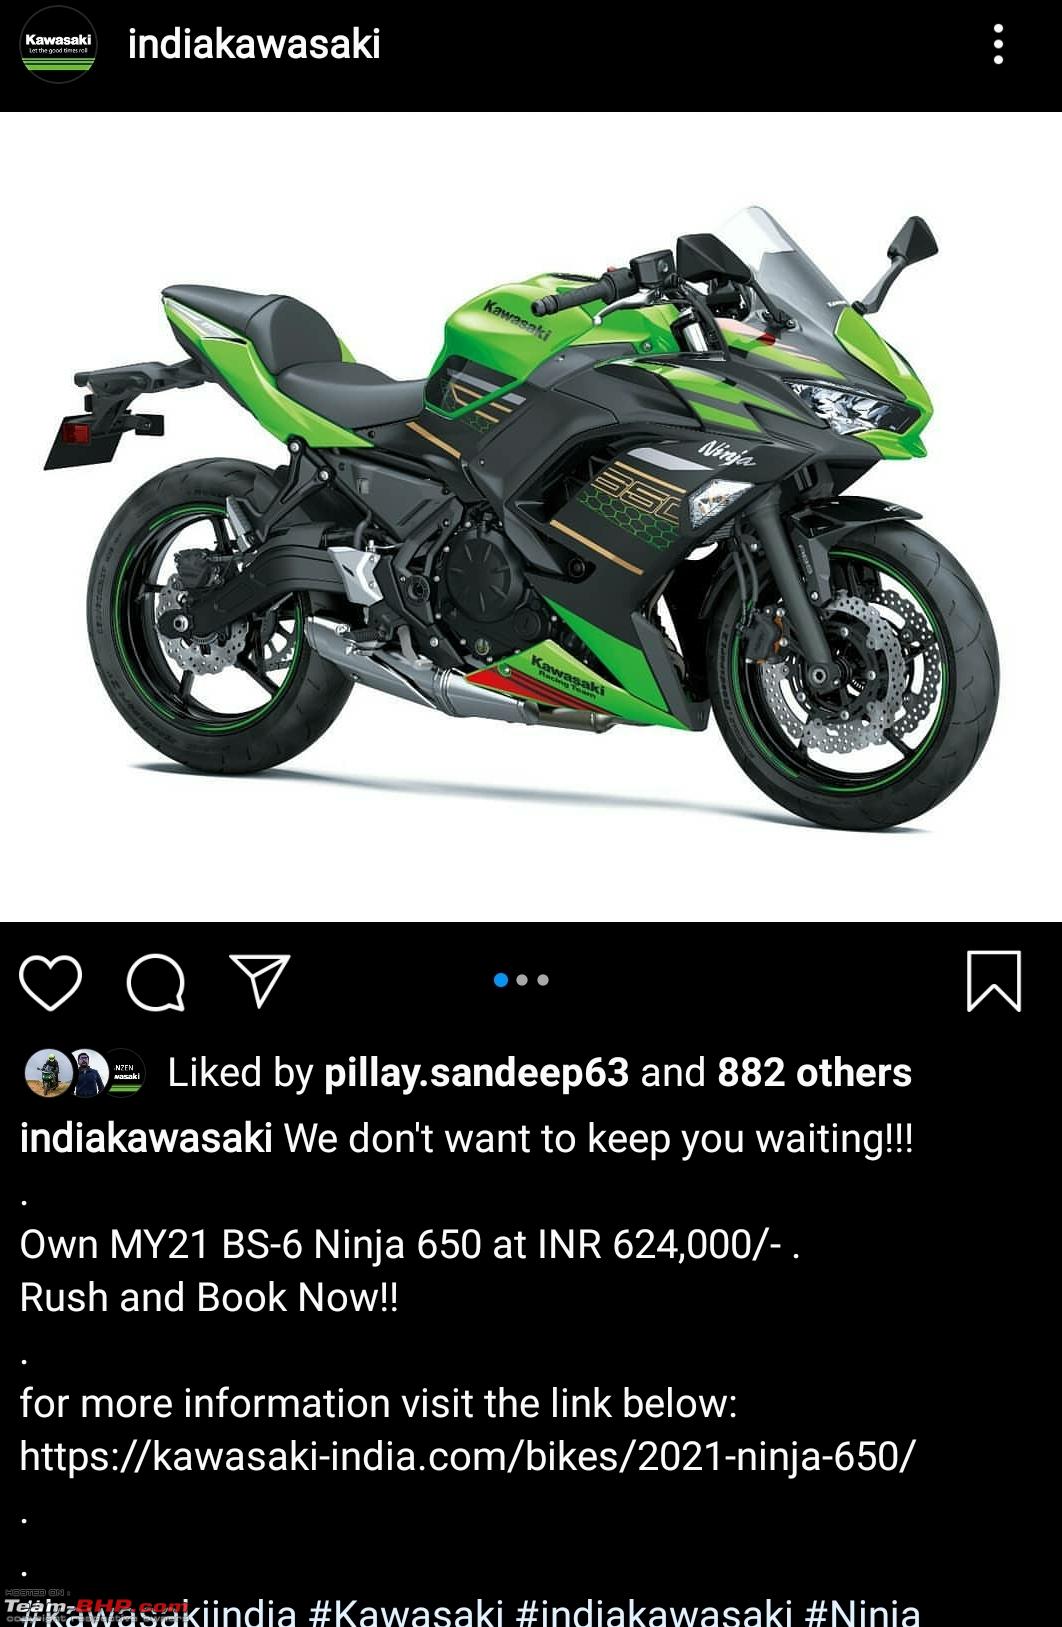 2020 Kawasaki Ninja 650 unveiled. Edit: Launched at 6.24 lakh - Team-BHP